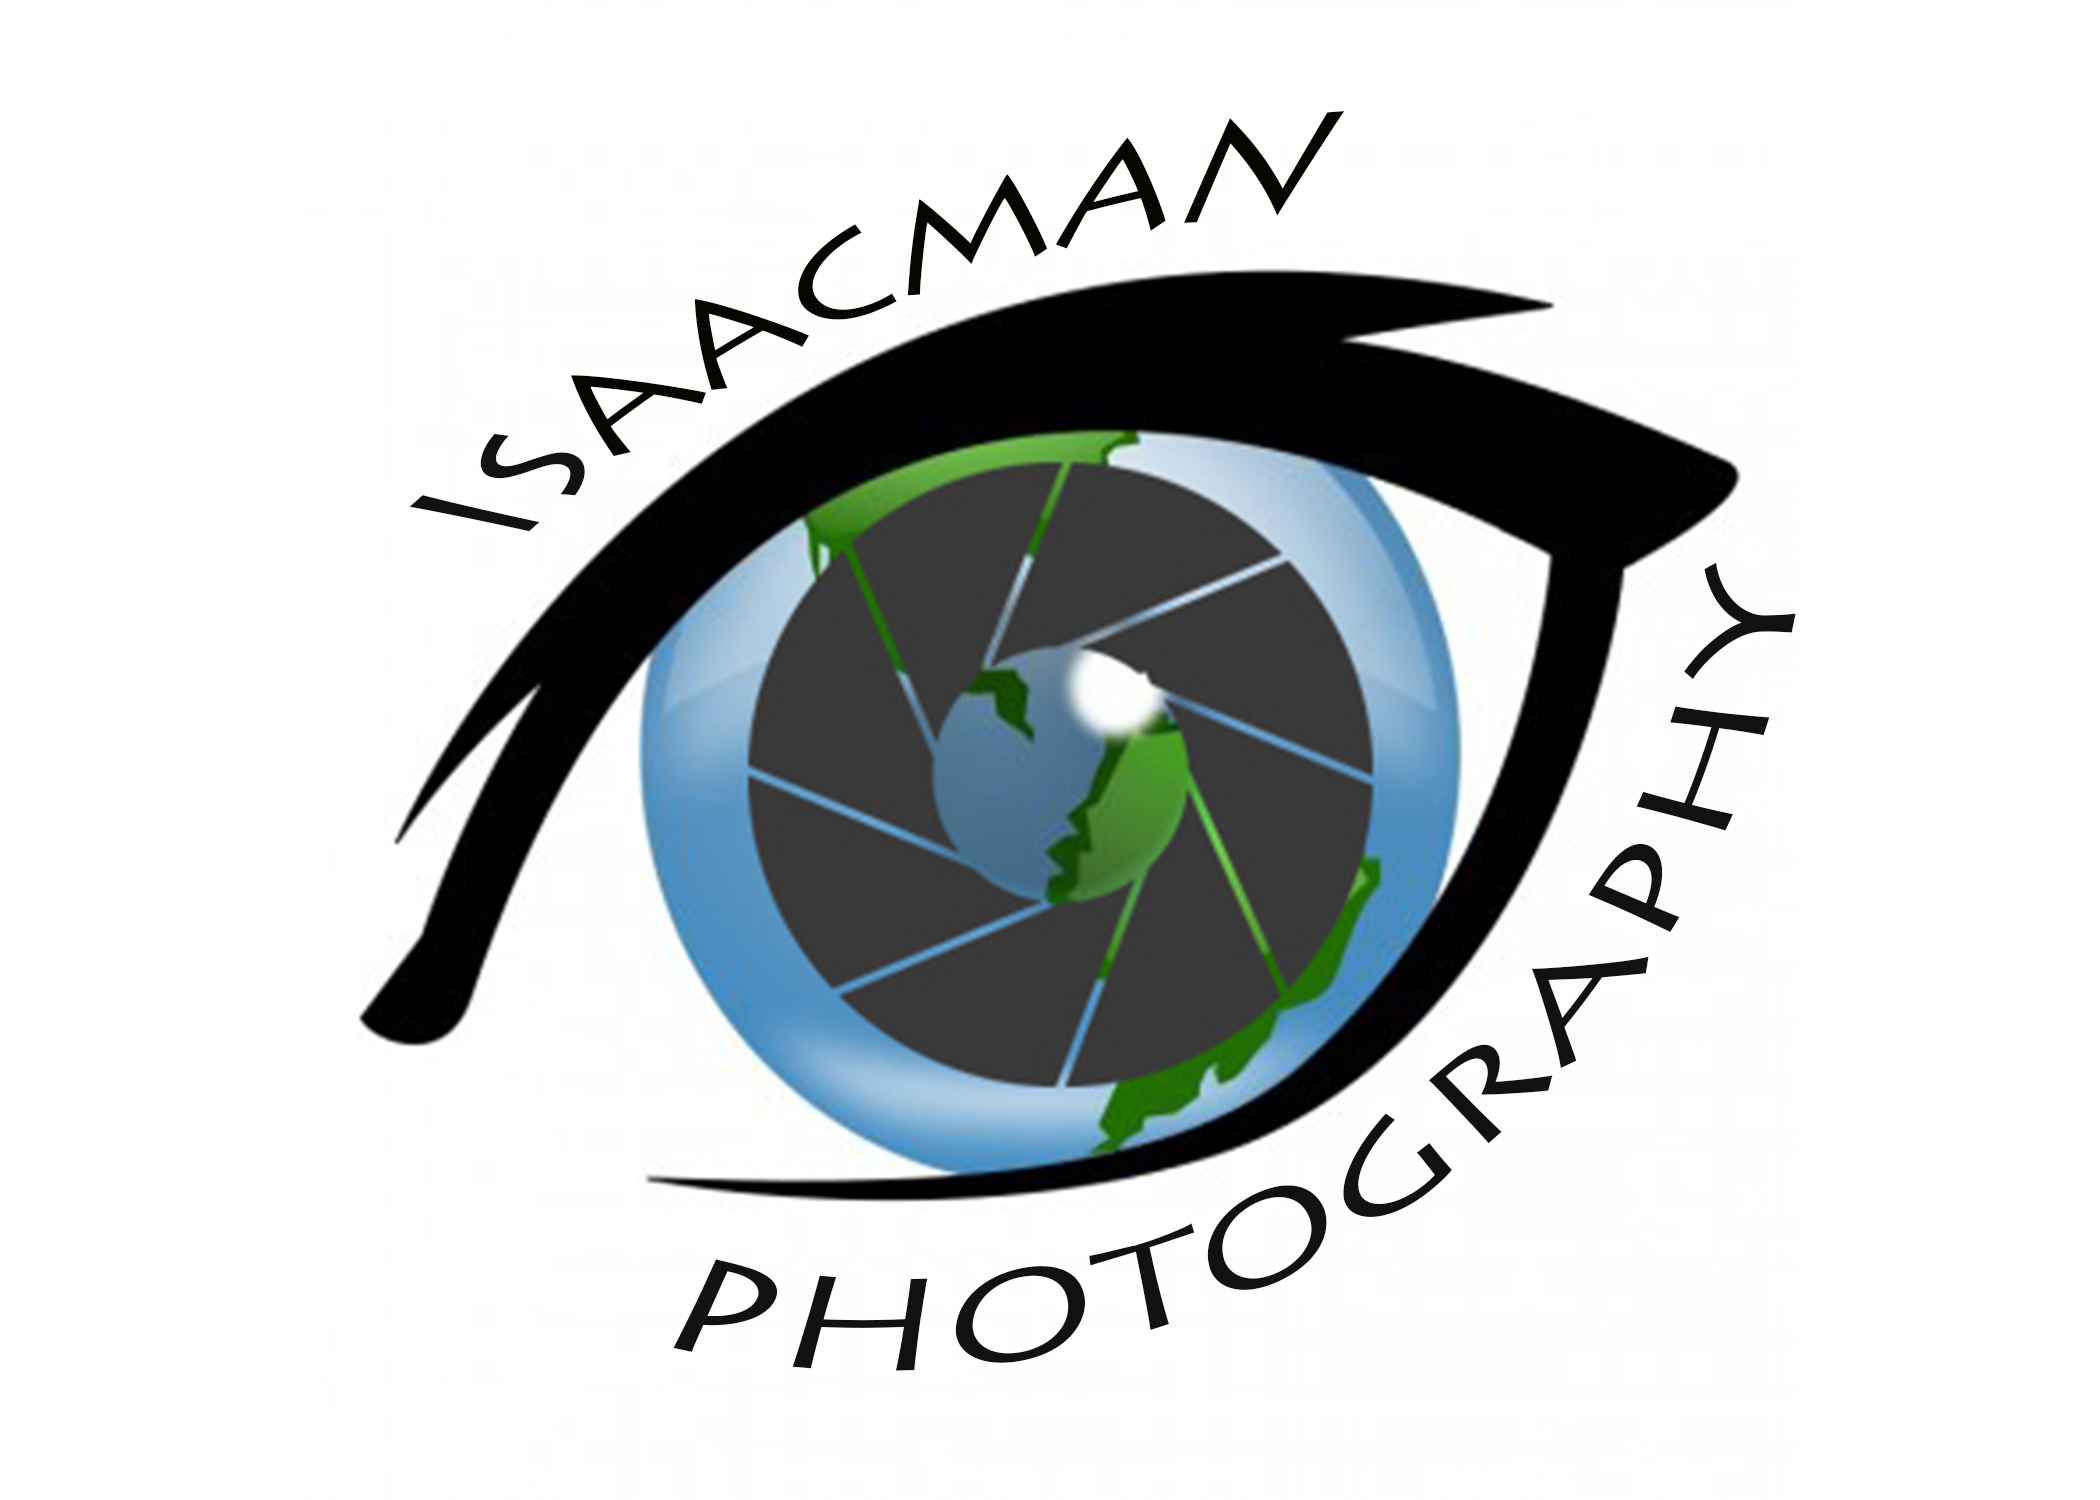 Rich Isaacman - Website